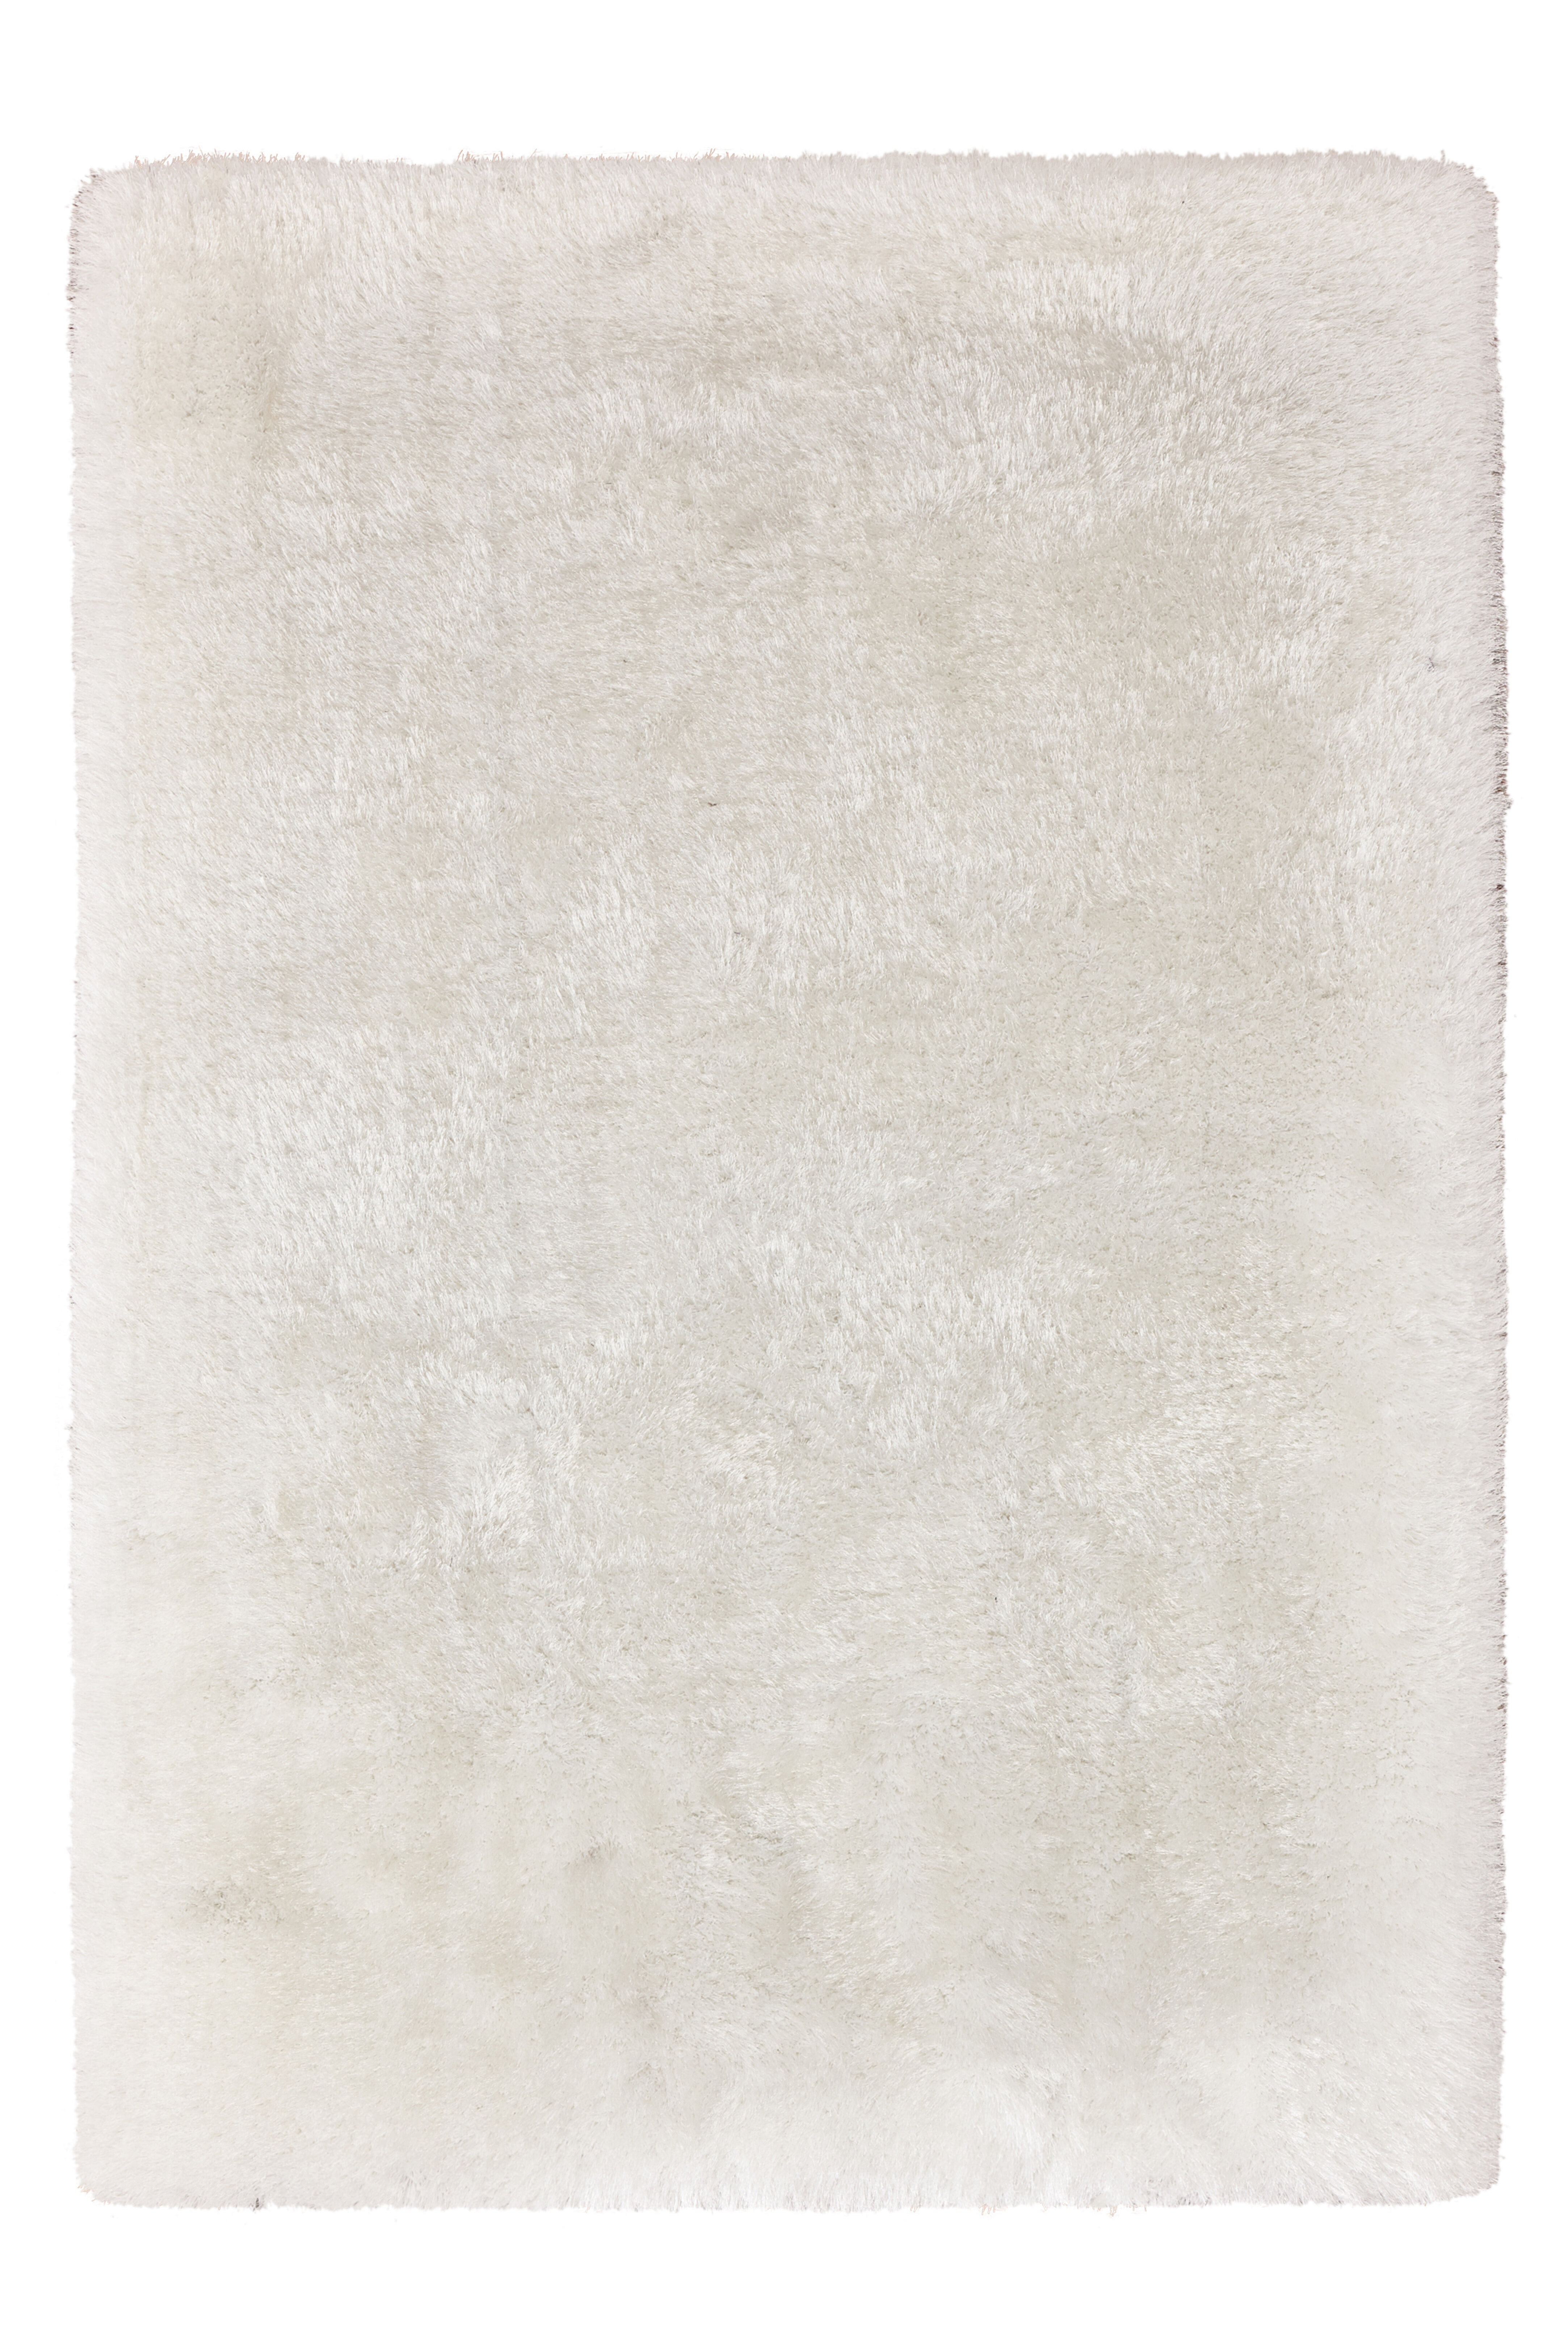 Kayoom Vloerkleed 'Cosy 310' kleur Wit, 160 x 230cm